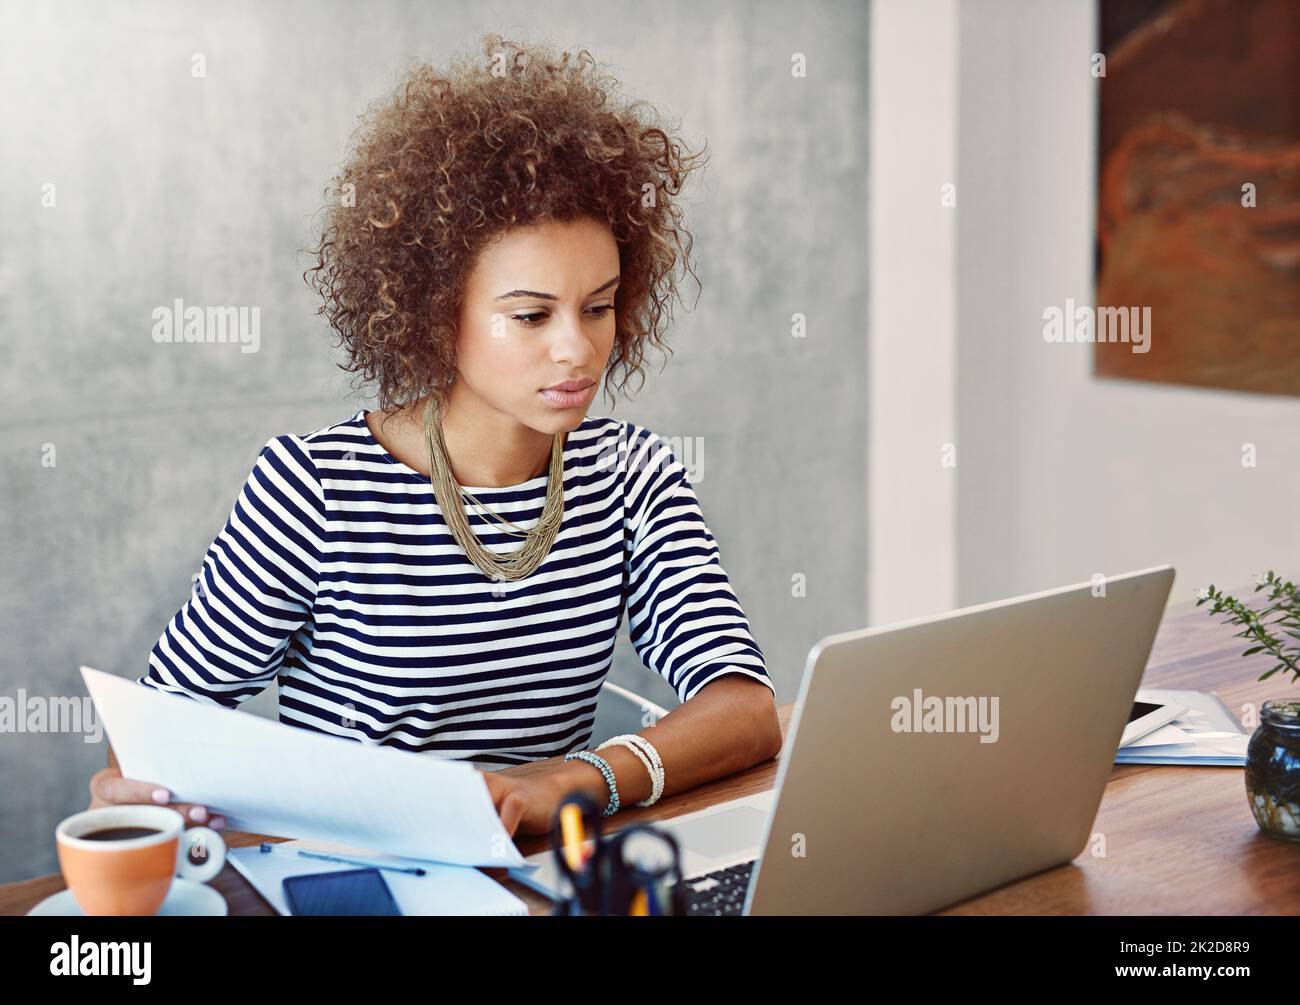 Verwaltung ihrer Papierdokumente und Online-Dokumente. Aufnahme einer jungen Frau, die zu Hause an einem Laptop arbeitet und Papierkram liest. Stockfoto